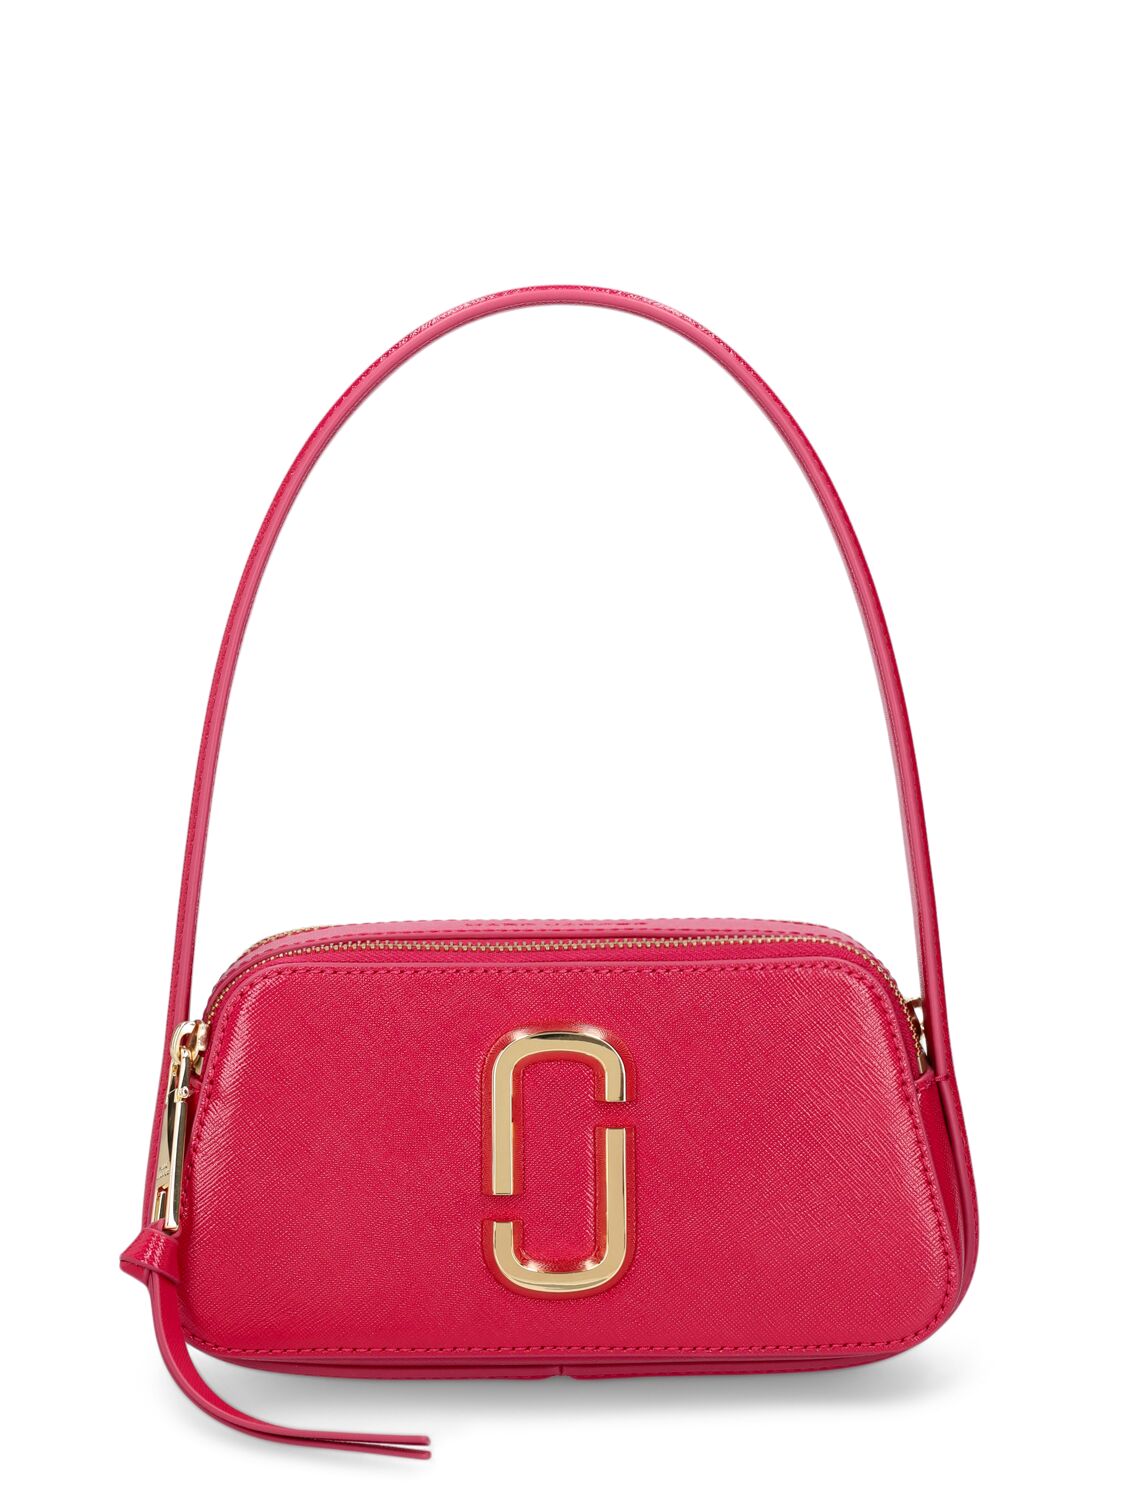 Marc Jacobs The Slingshot Leather Shoulder Bag In Lipstick Pink